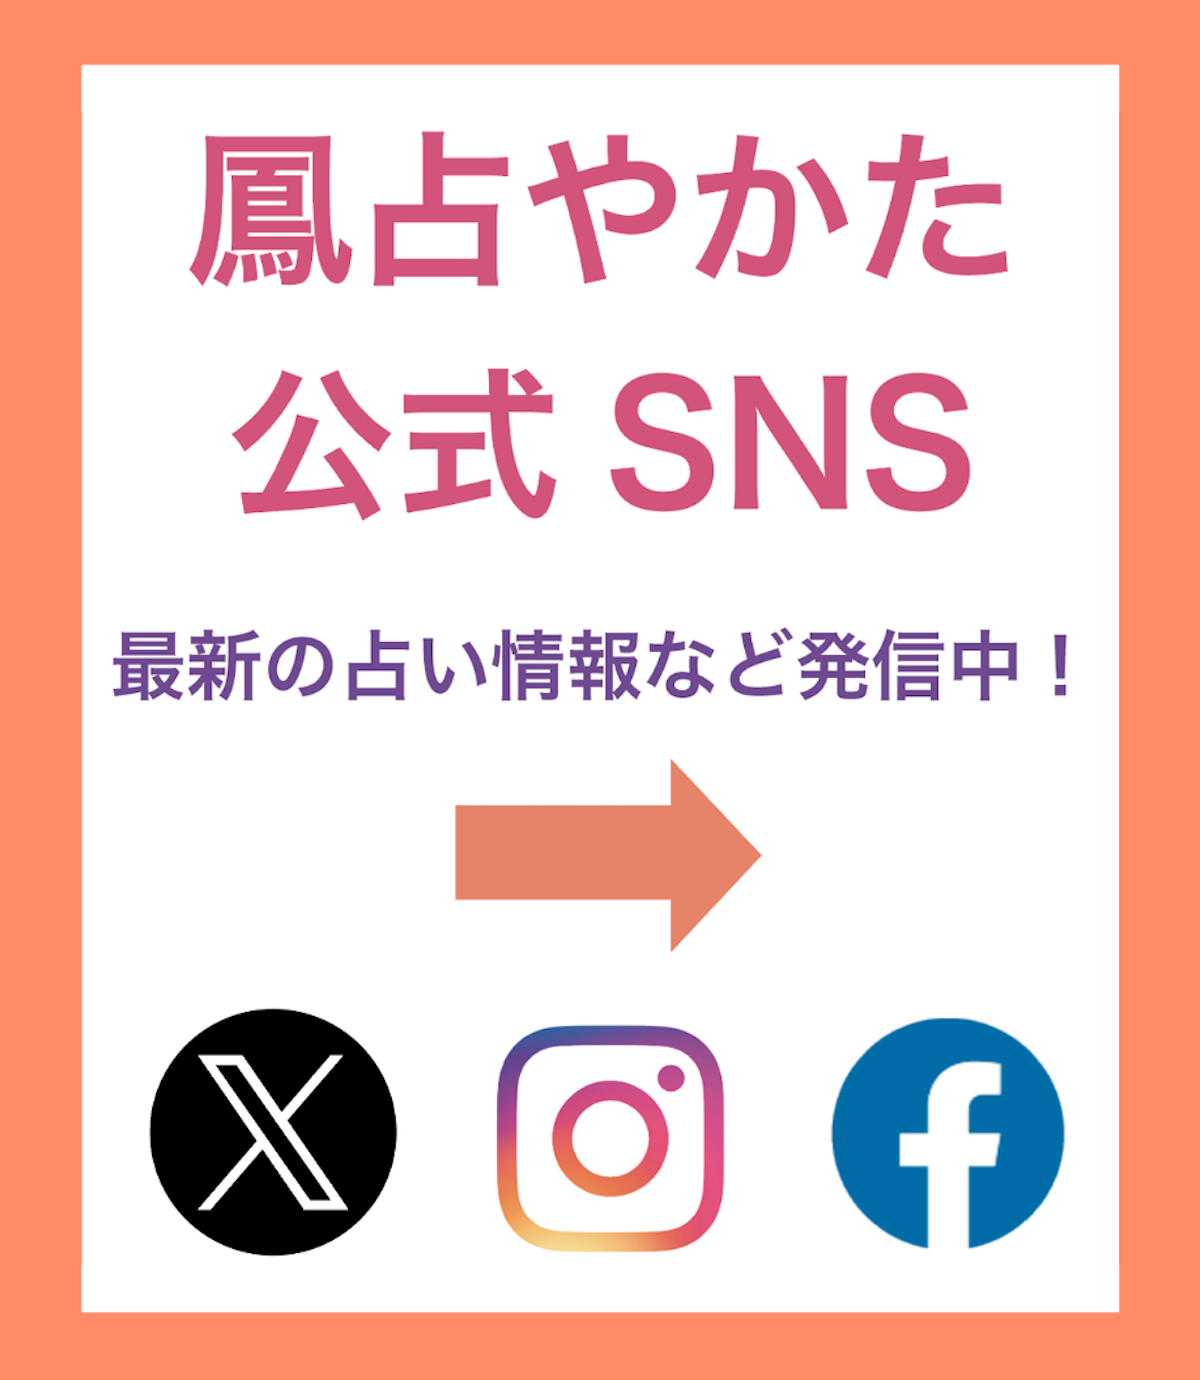 鳳占やかたはX,instagram,facebookのsnsをしています。